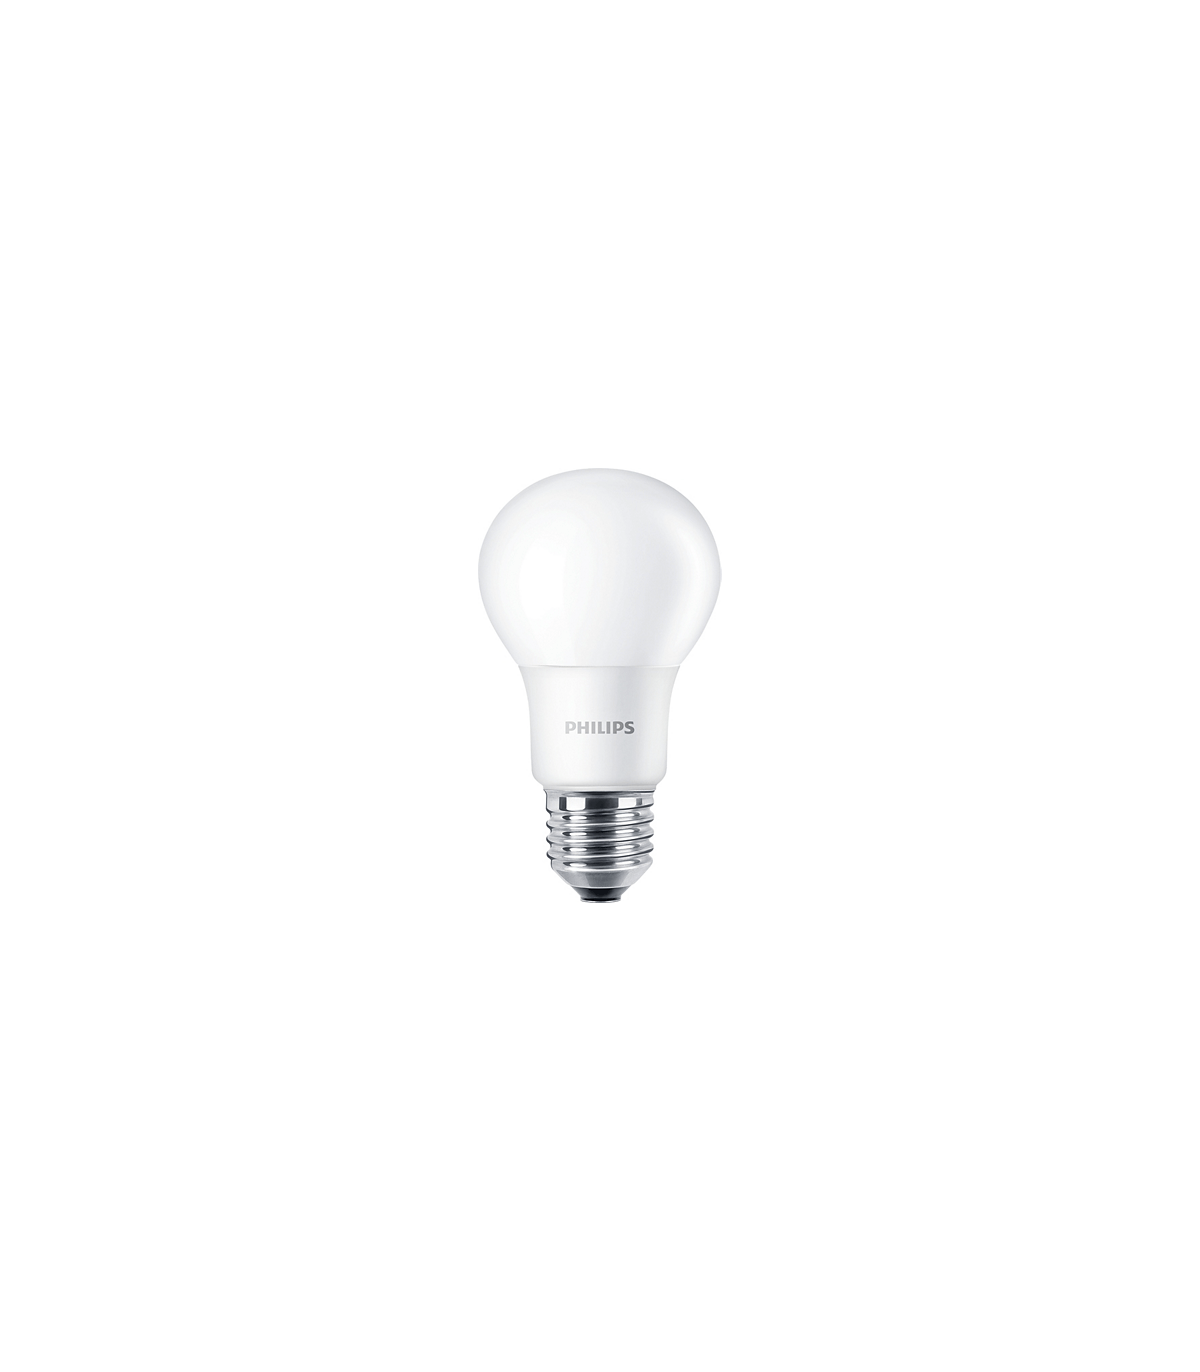 Ampoule LED Osram Tubulaire 46w substitut 125w 5400 lumen blanc chaud 2700K  E40